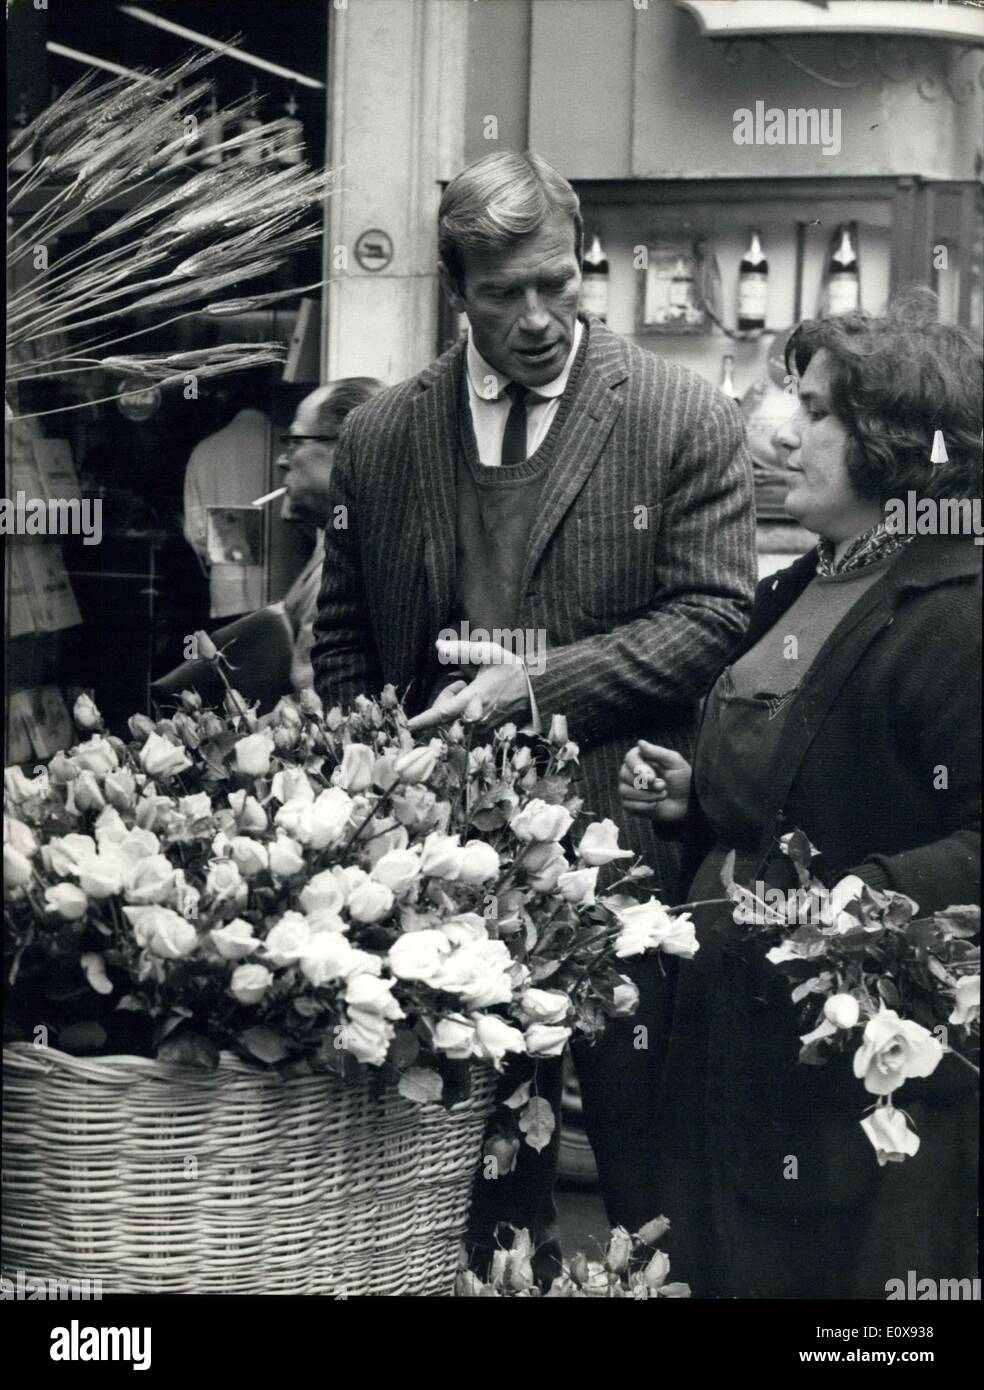 Le 27 novembre 1965 - Secret agent 077, alias Ken Clark, l'acteur américain, l'IAIS le fusil pour acheter les fleurs. Il vous donnera les fleurs pour sa fiancée ou les fleurs se dissimuler l'arme au cours d'une nouvelle action ? Photo montre Ken Clark acheter les fleurs sur l'étape espagnole. Banque D'Images